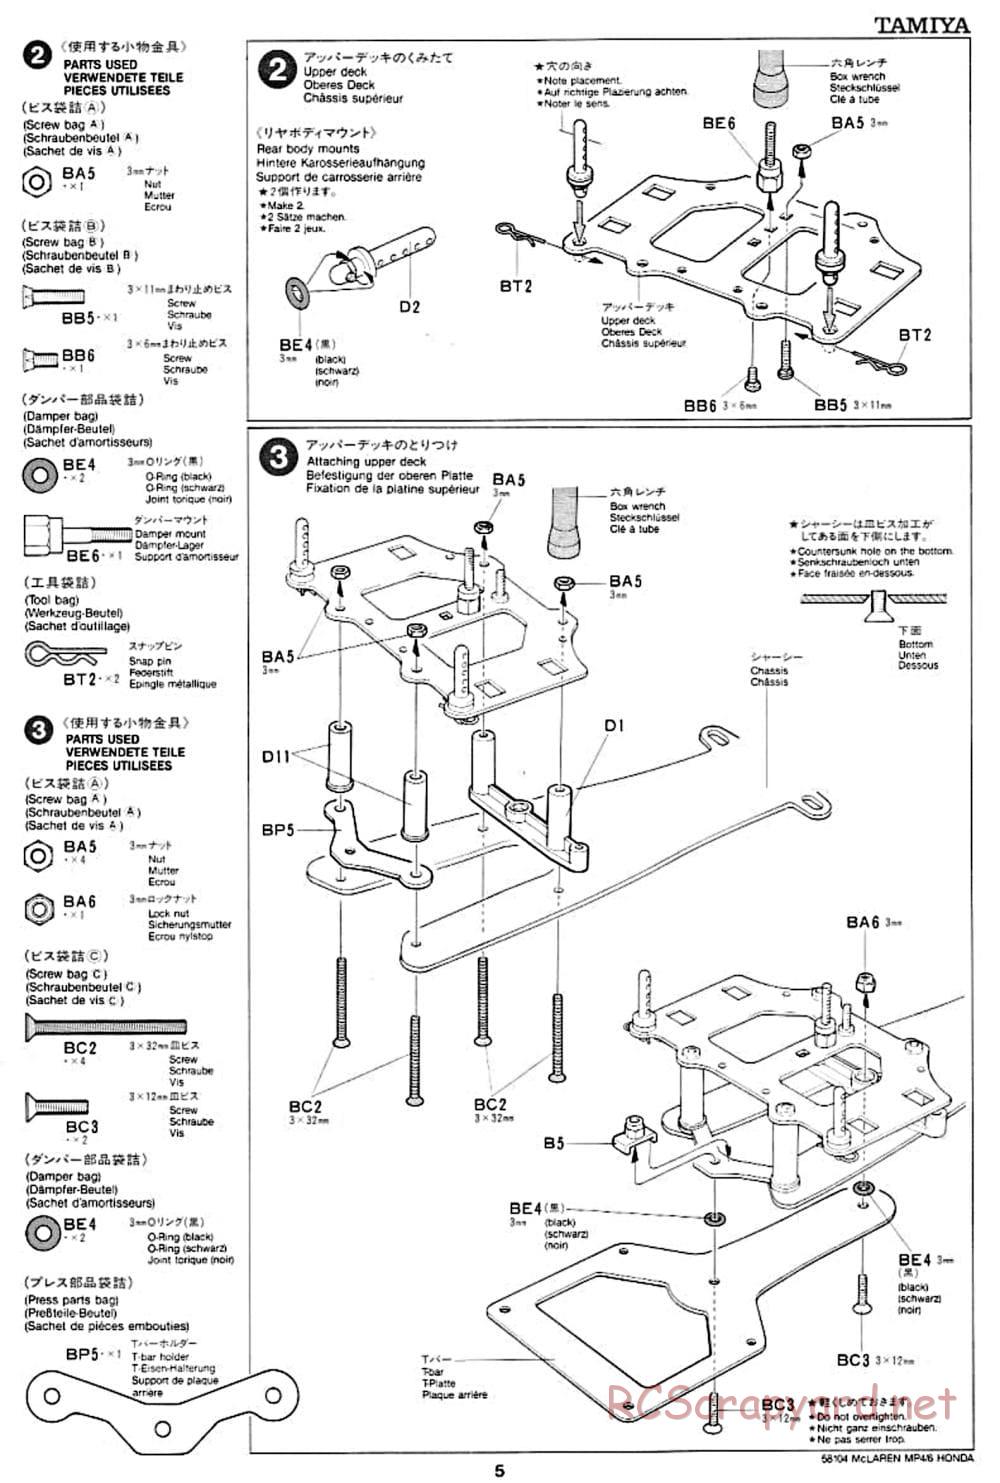 Tamiya - McLaren MP4/6 Honda - F102 Chassis - Manual - Page 5